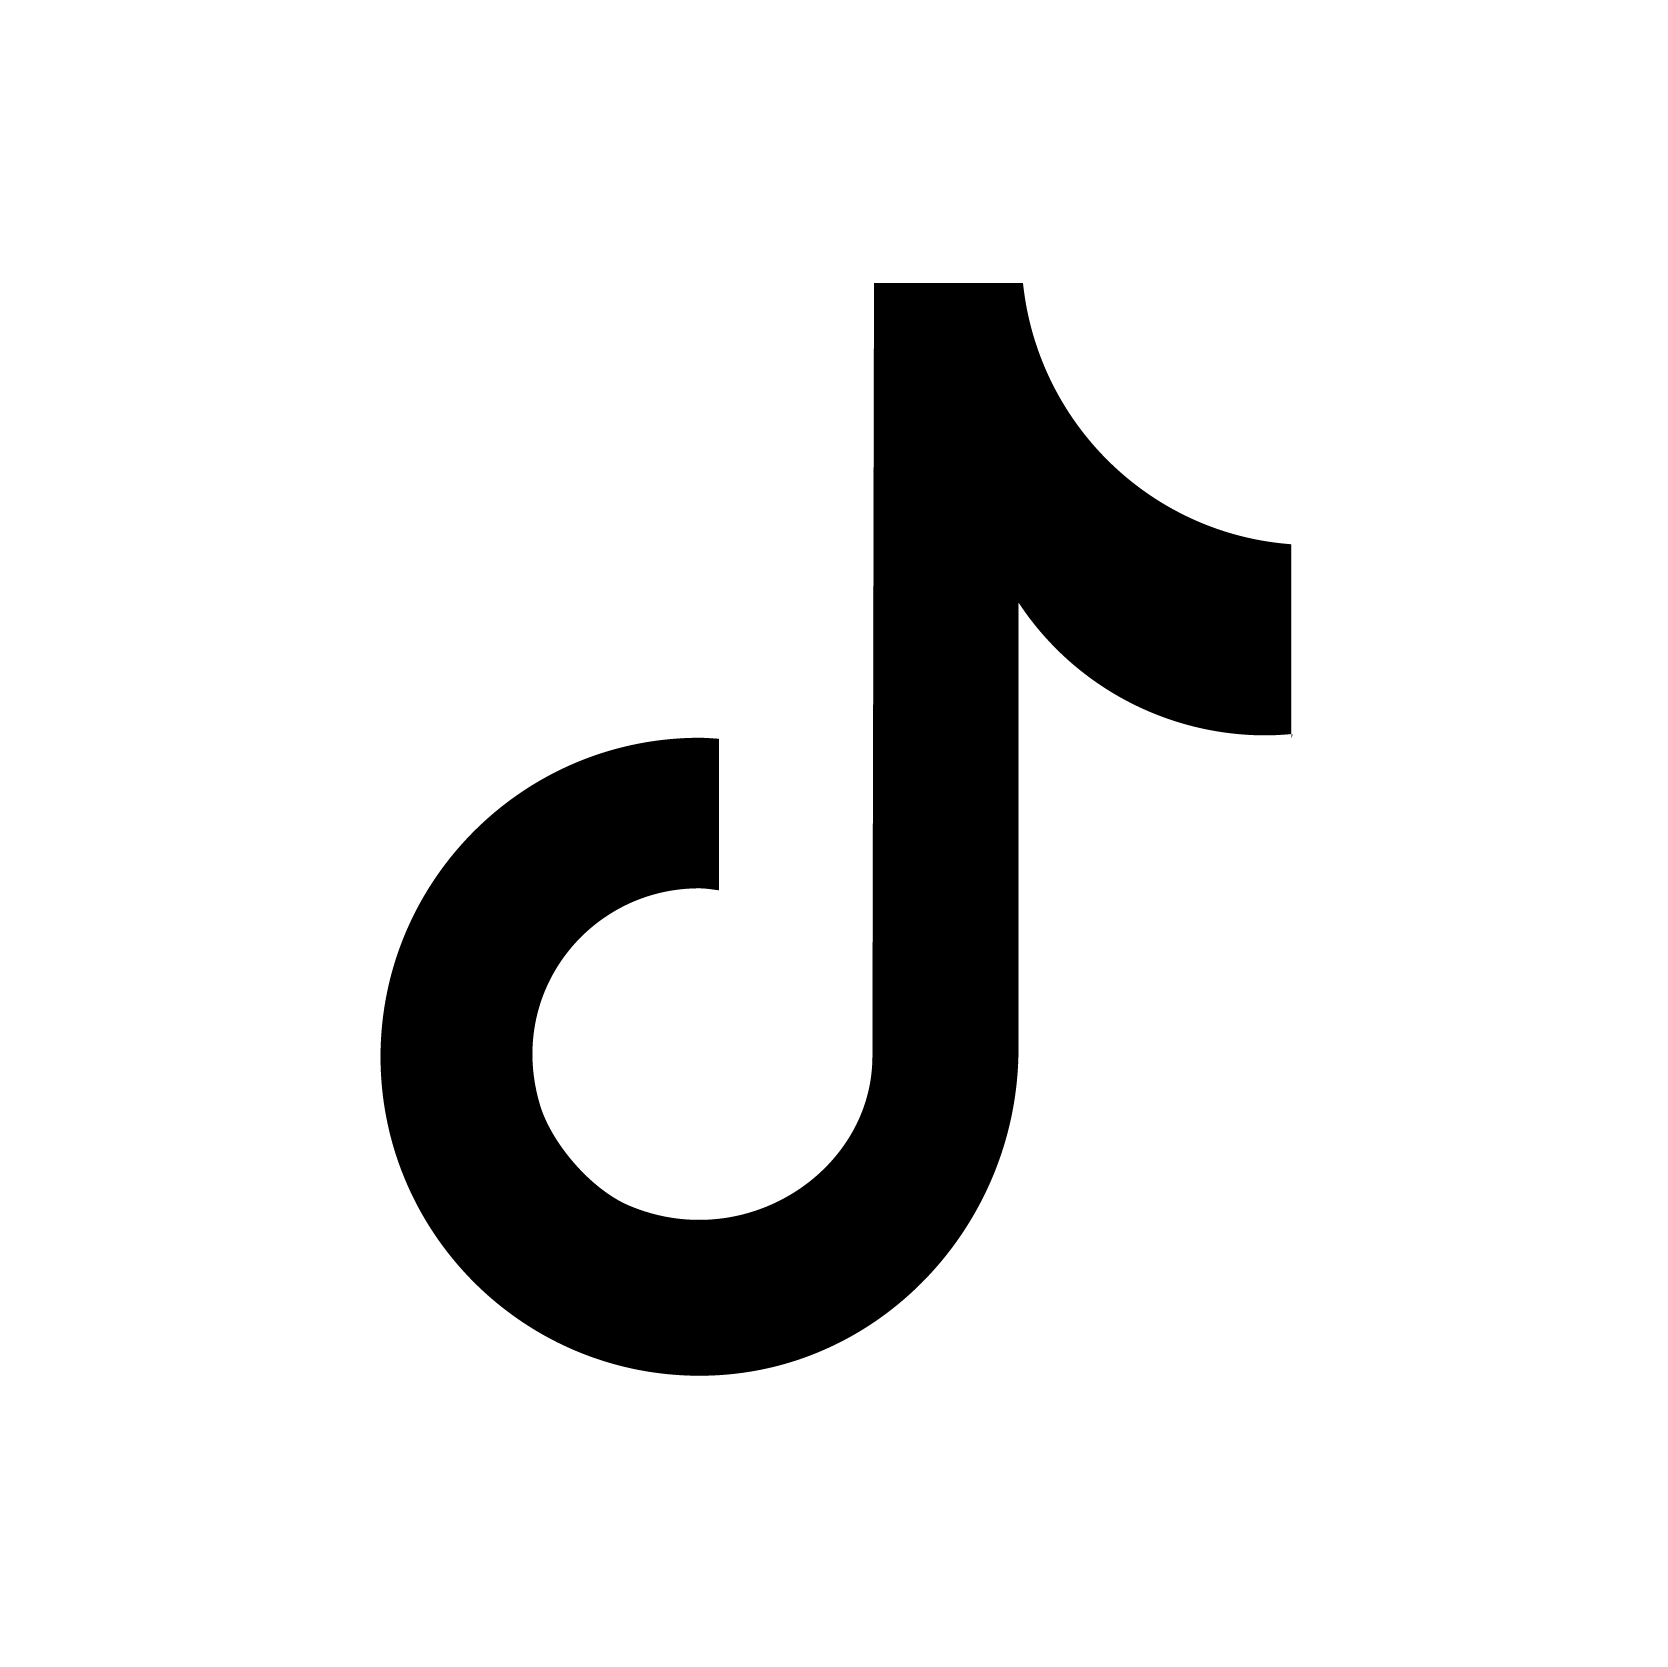 Tiktok Logotipo Do Ícone - Imagens grátis no Pixabay - Pixabay